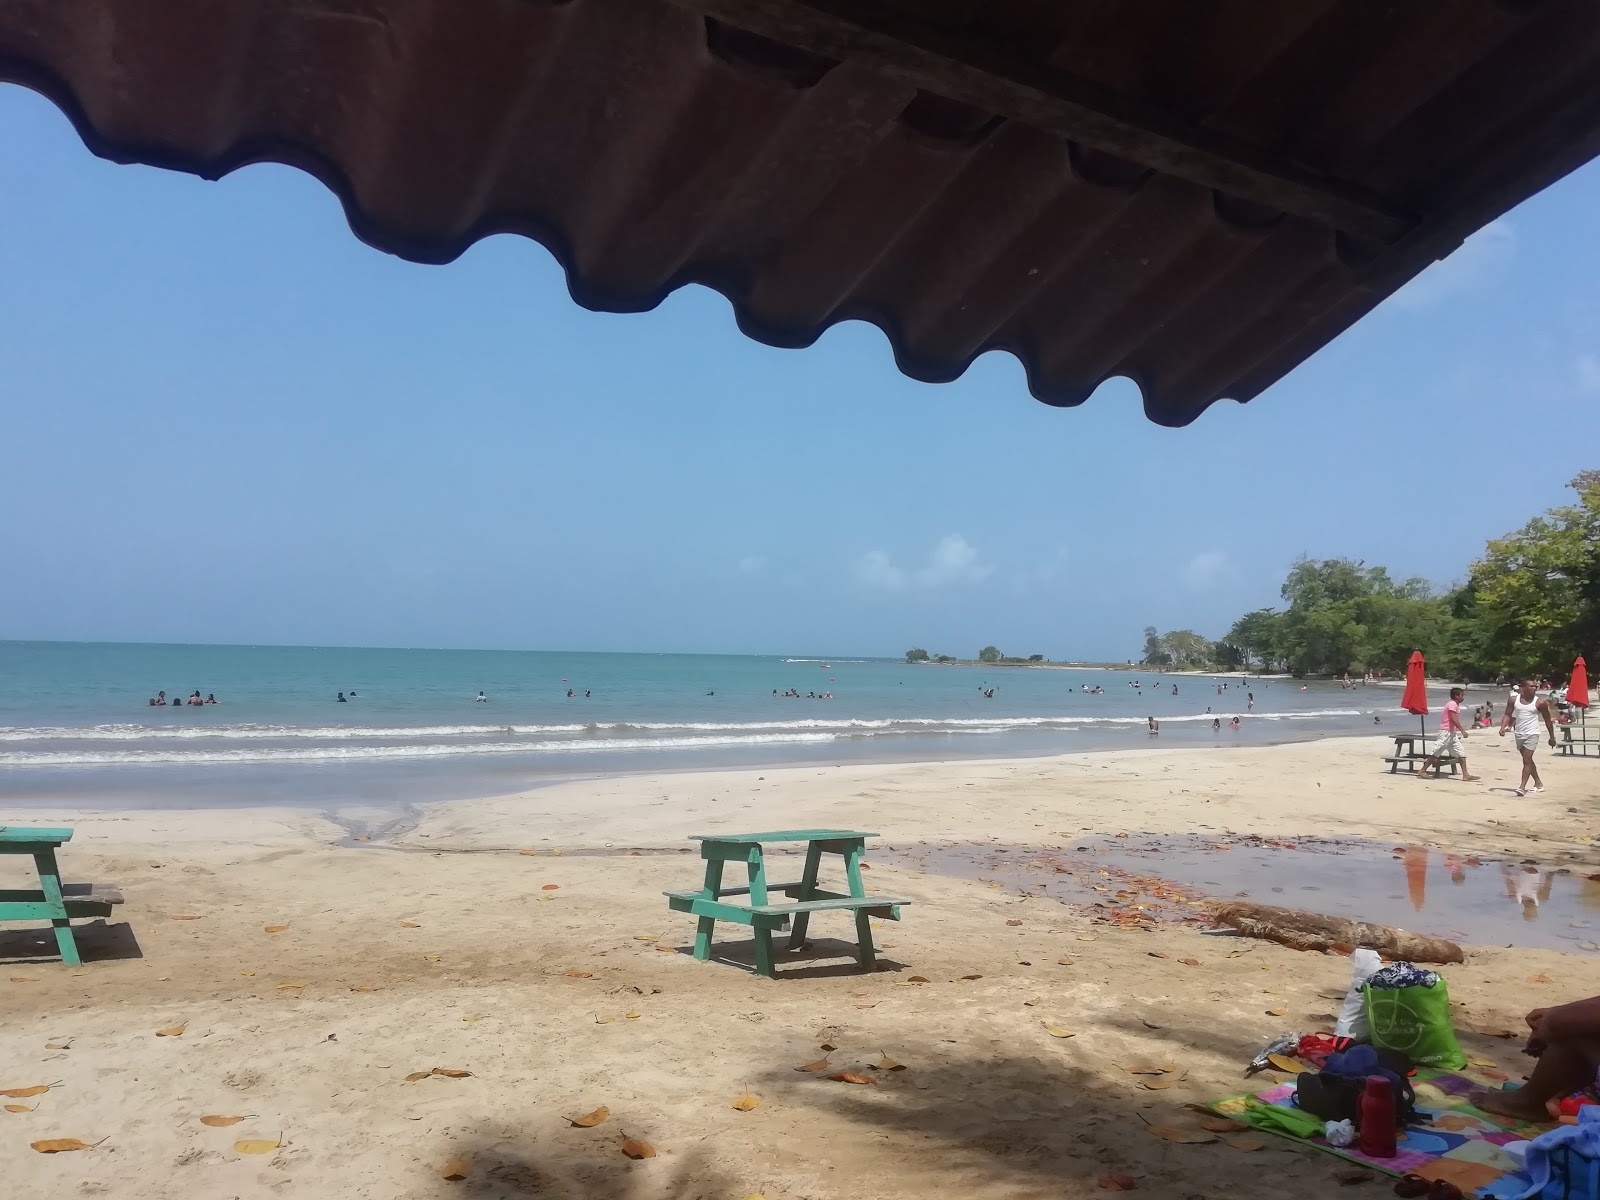 Fotografie cu Angosta Beach - locul popular printre cunoscătorii de relaxare